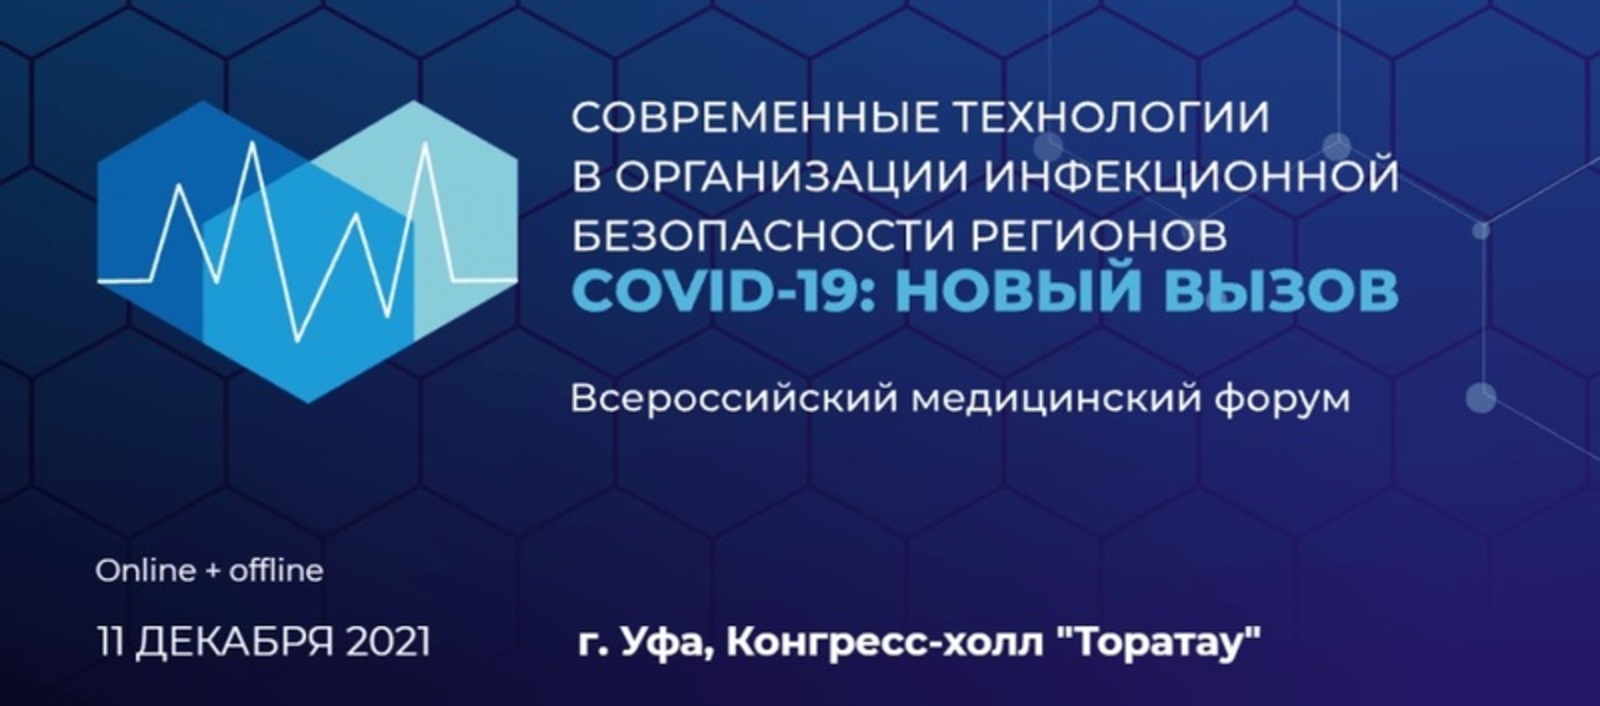 Всероссийский медицинский форум «COVID-19: новый вызов»